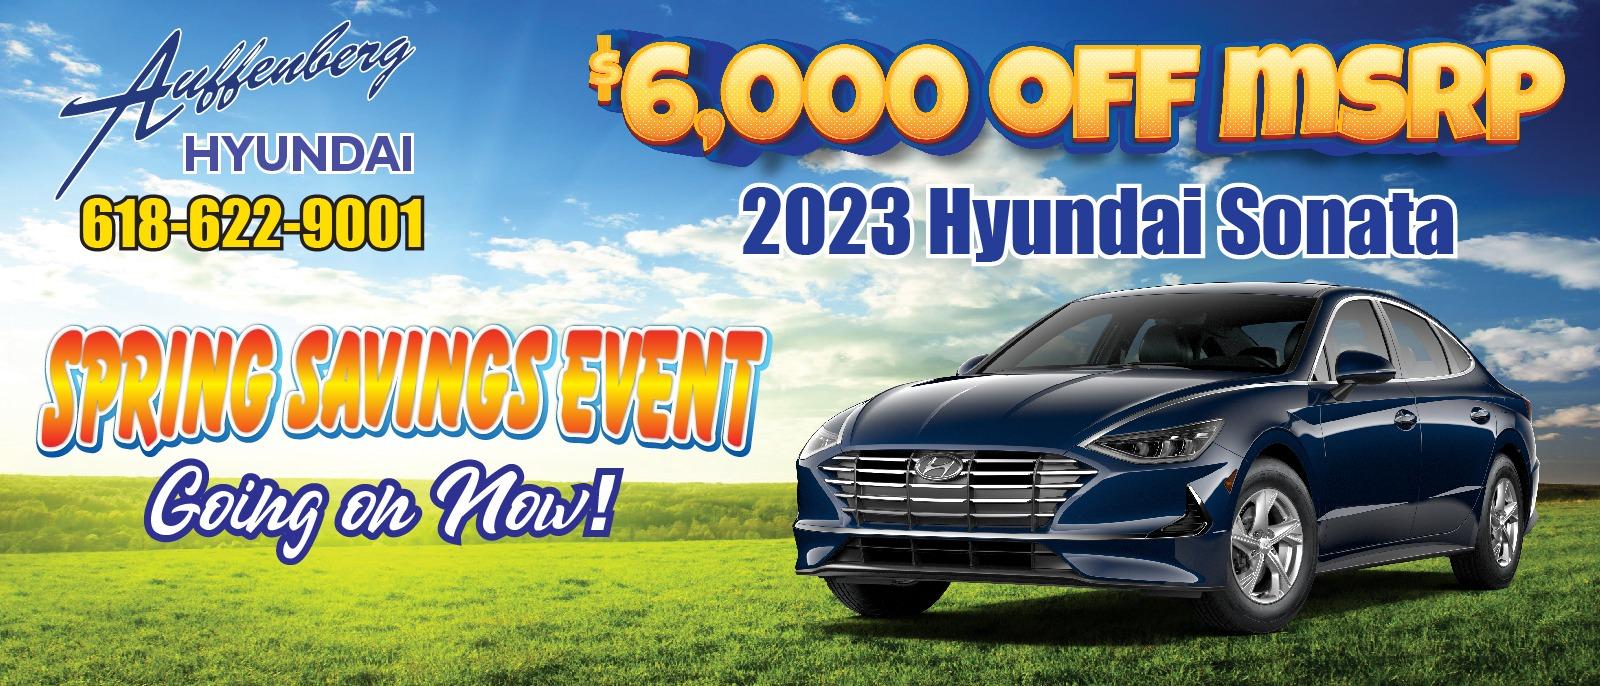 2023 Hyundai Sonata
$6,000 off MSRP